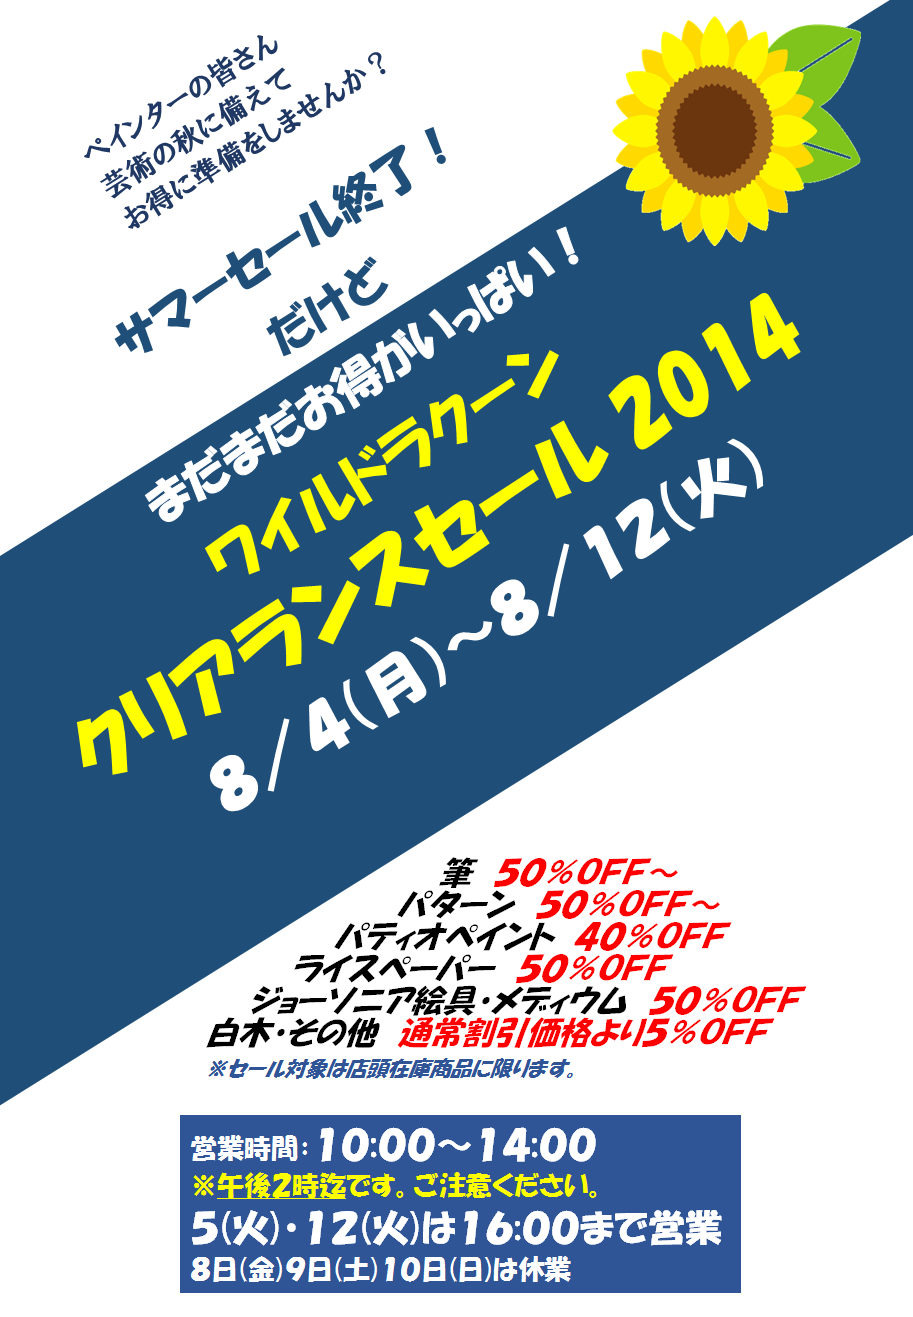 予定通り8/4(月)より開催！「クリアランスセール 2014」